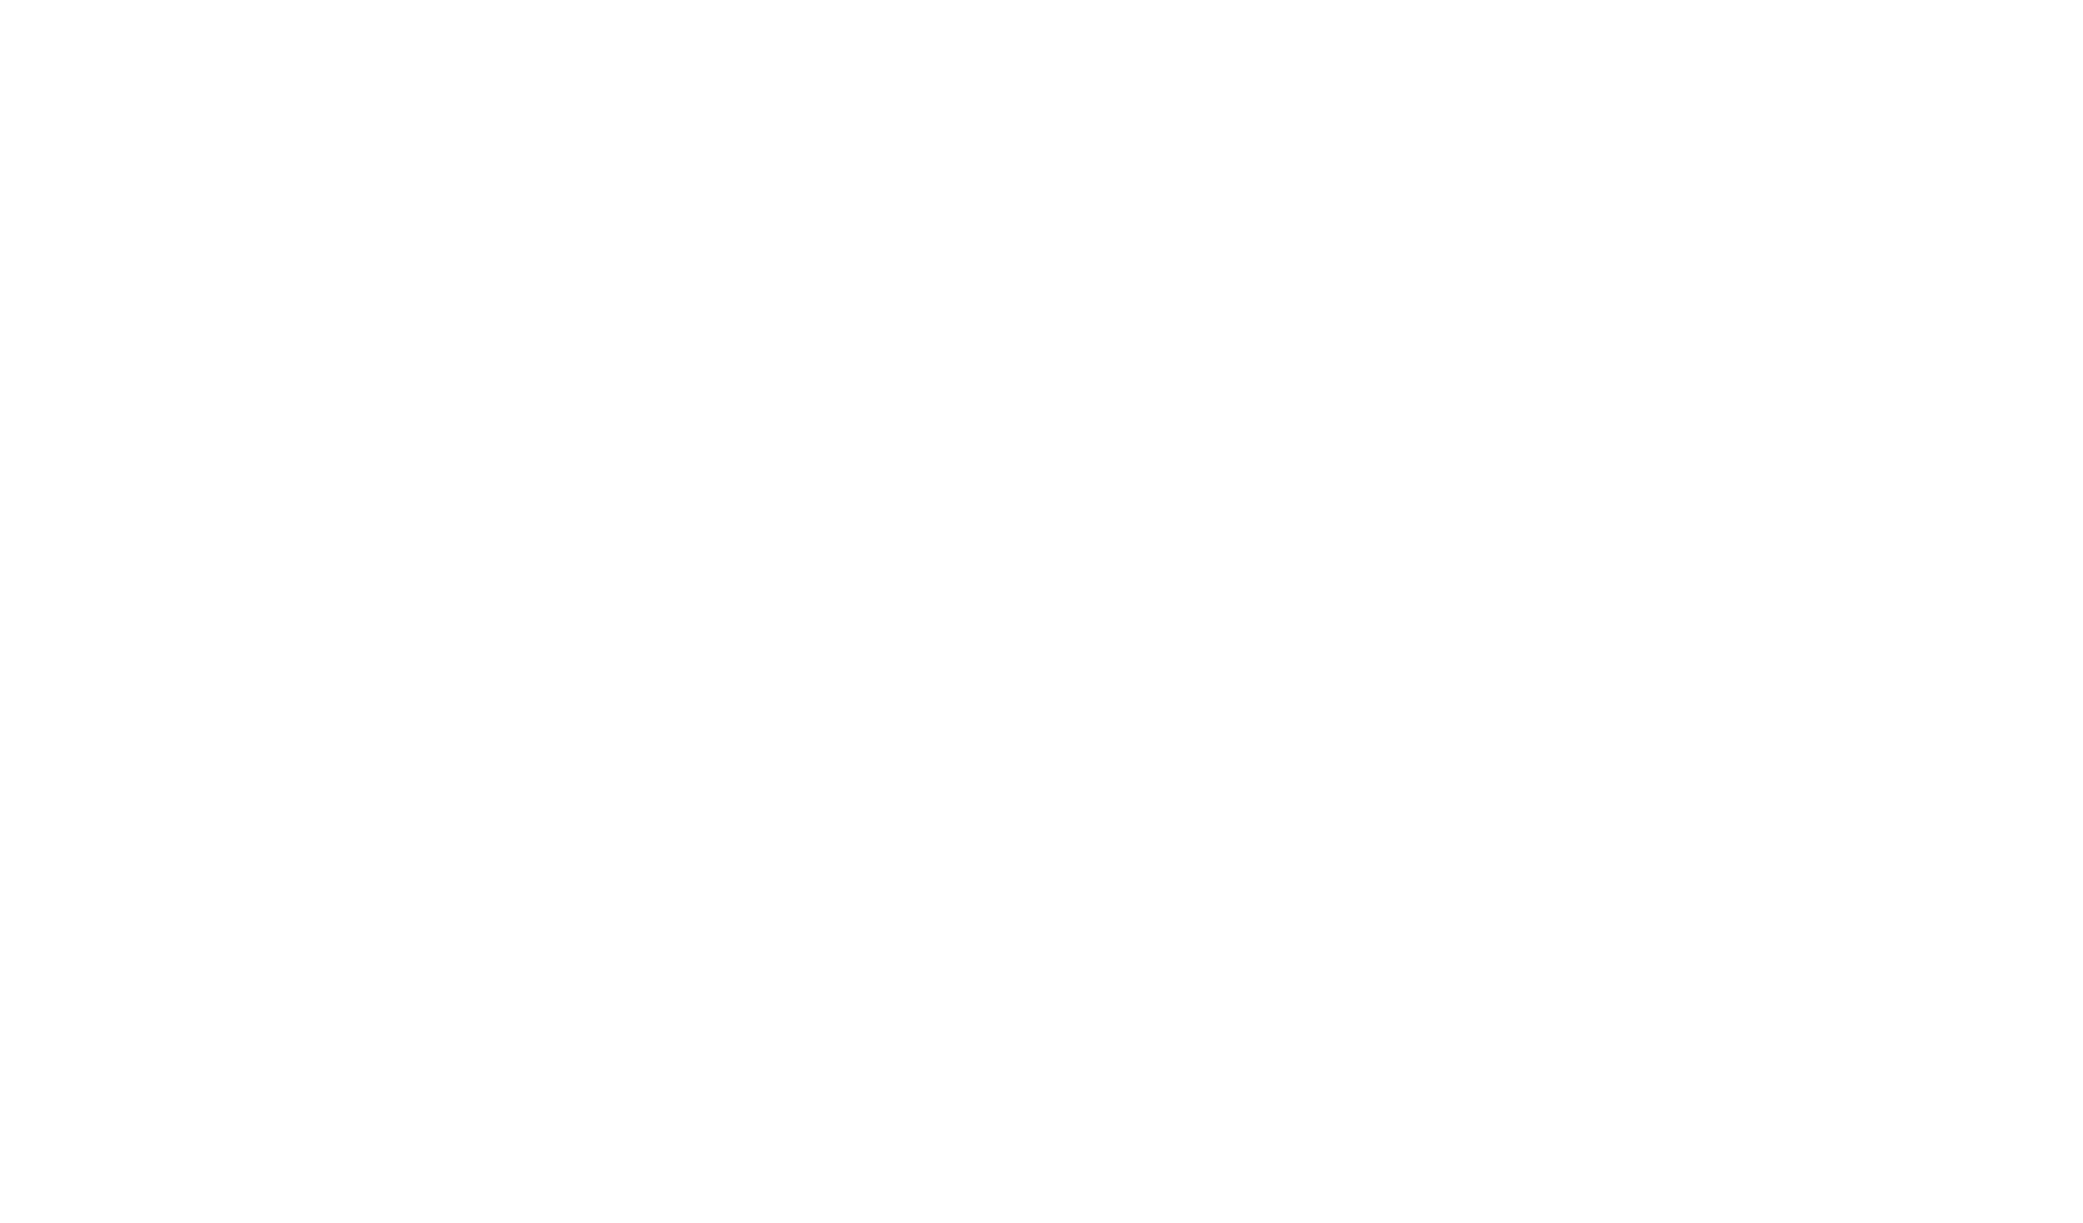 Doxie Got Moxie